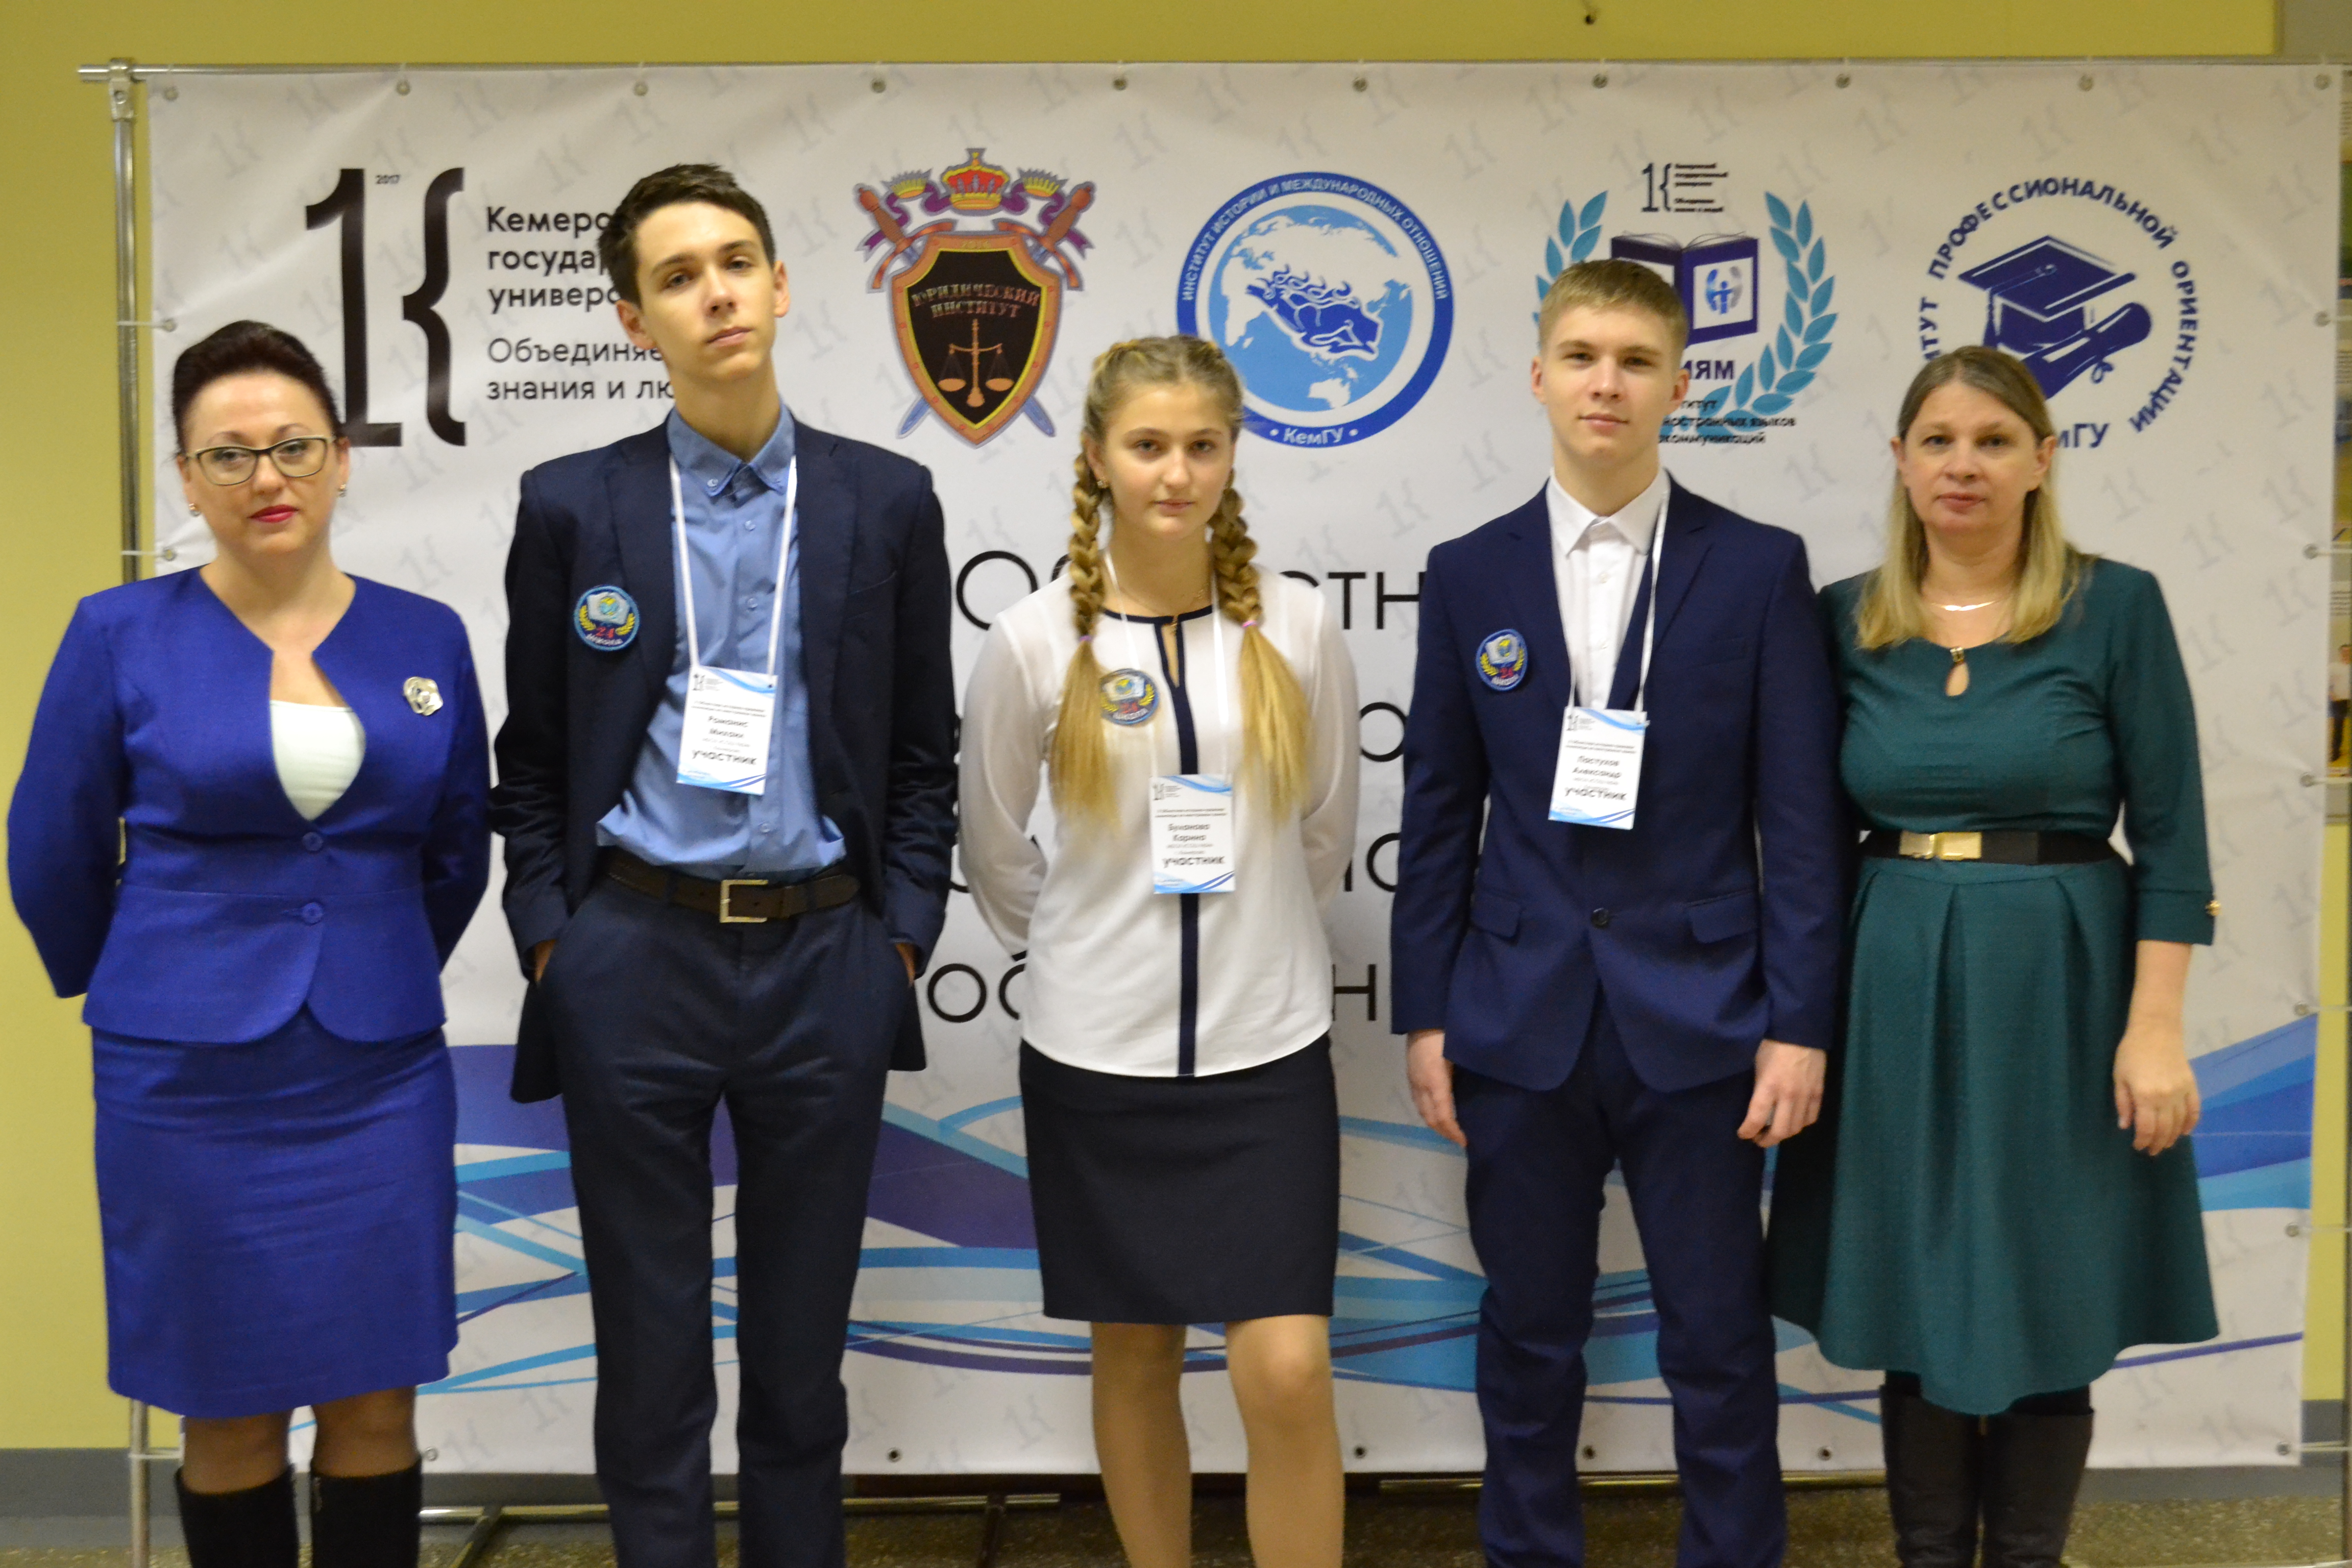 X Областная историко-правовая олимпиада школьников на иностранных языках прошла в Кемерове